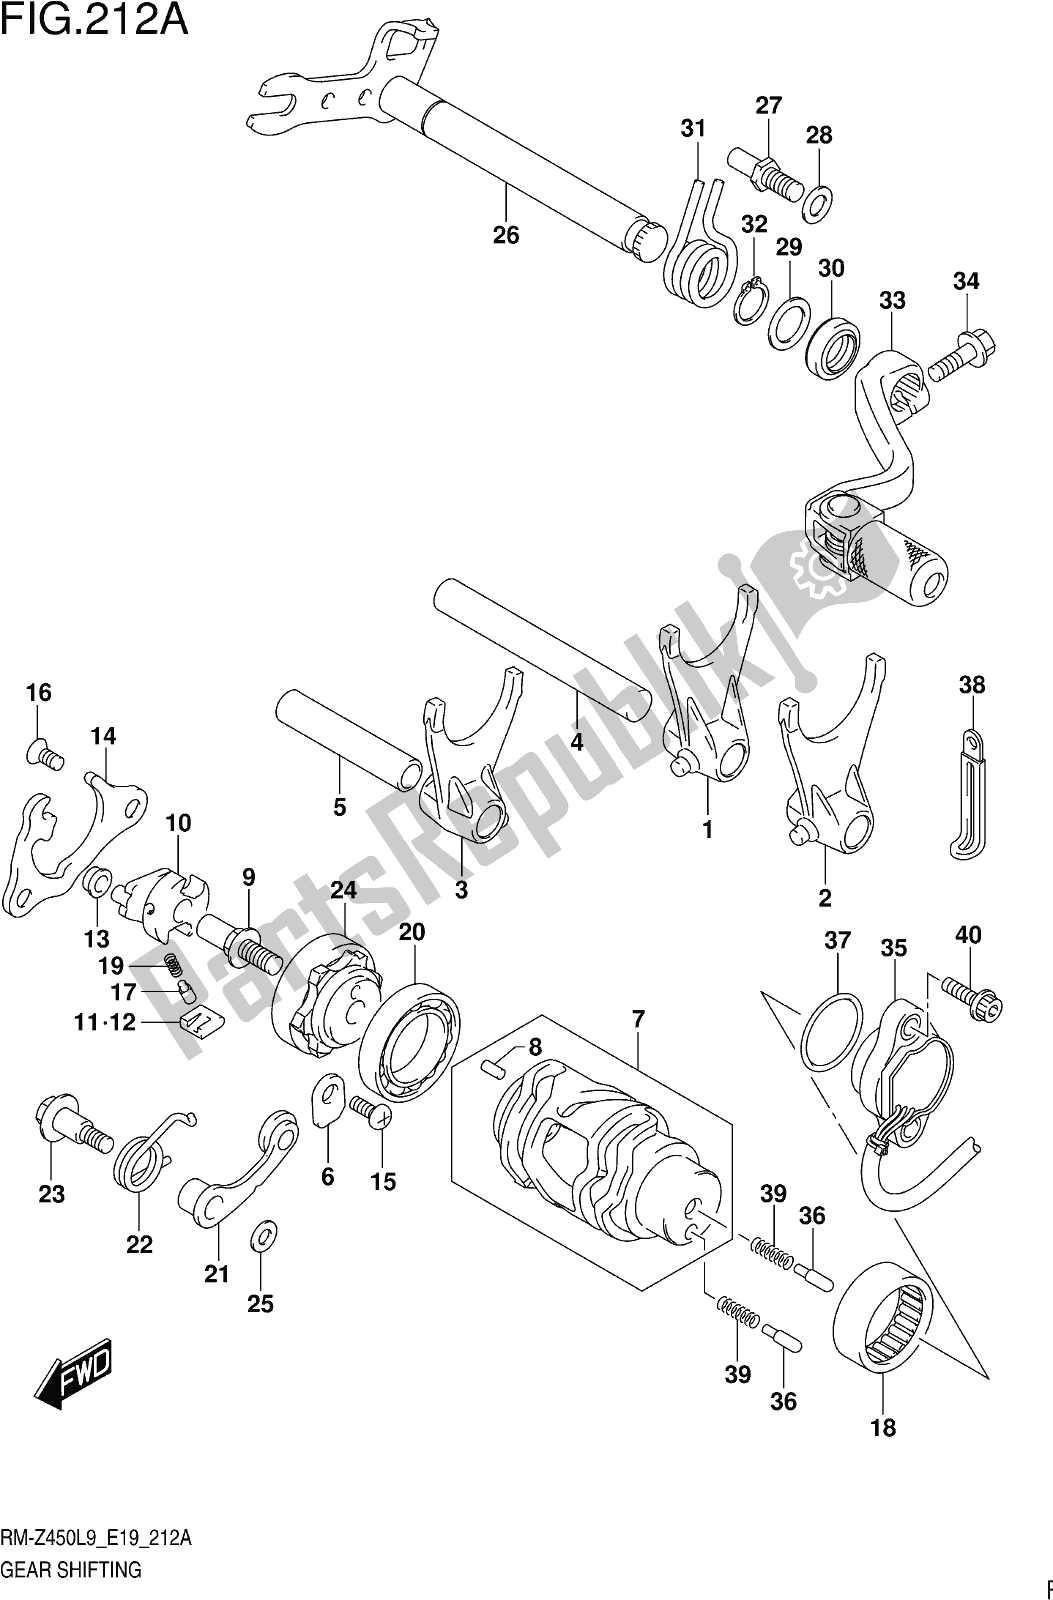 Toutes les pièces pour le Fig. 212a Gear Shifting du Suzuki RM-Z 450 2019